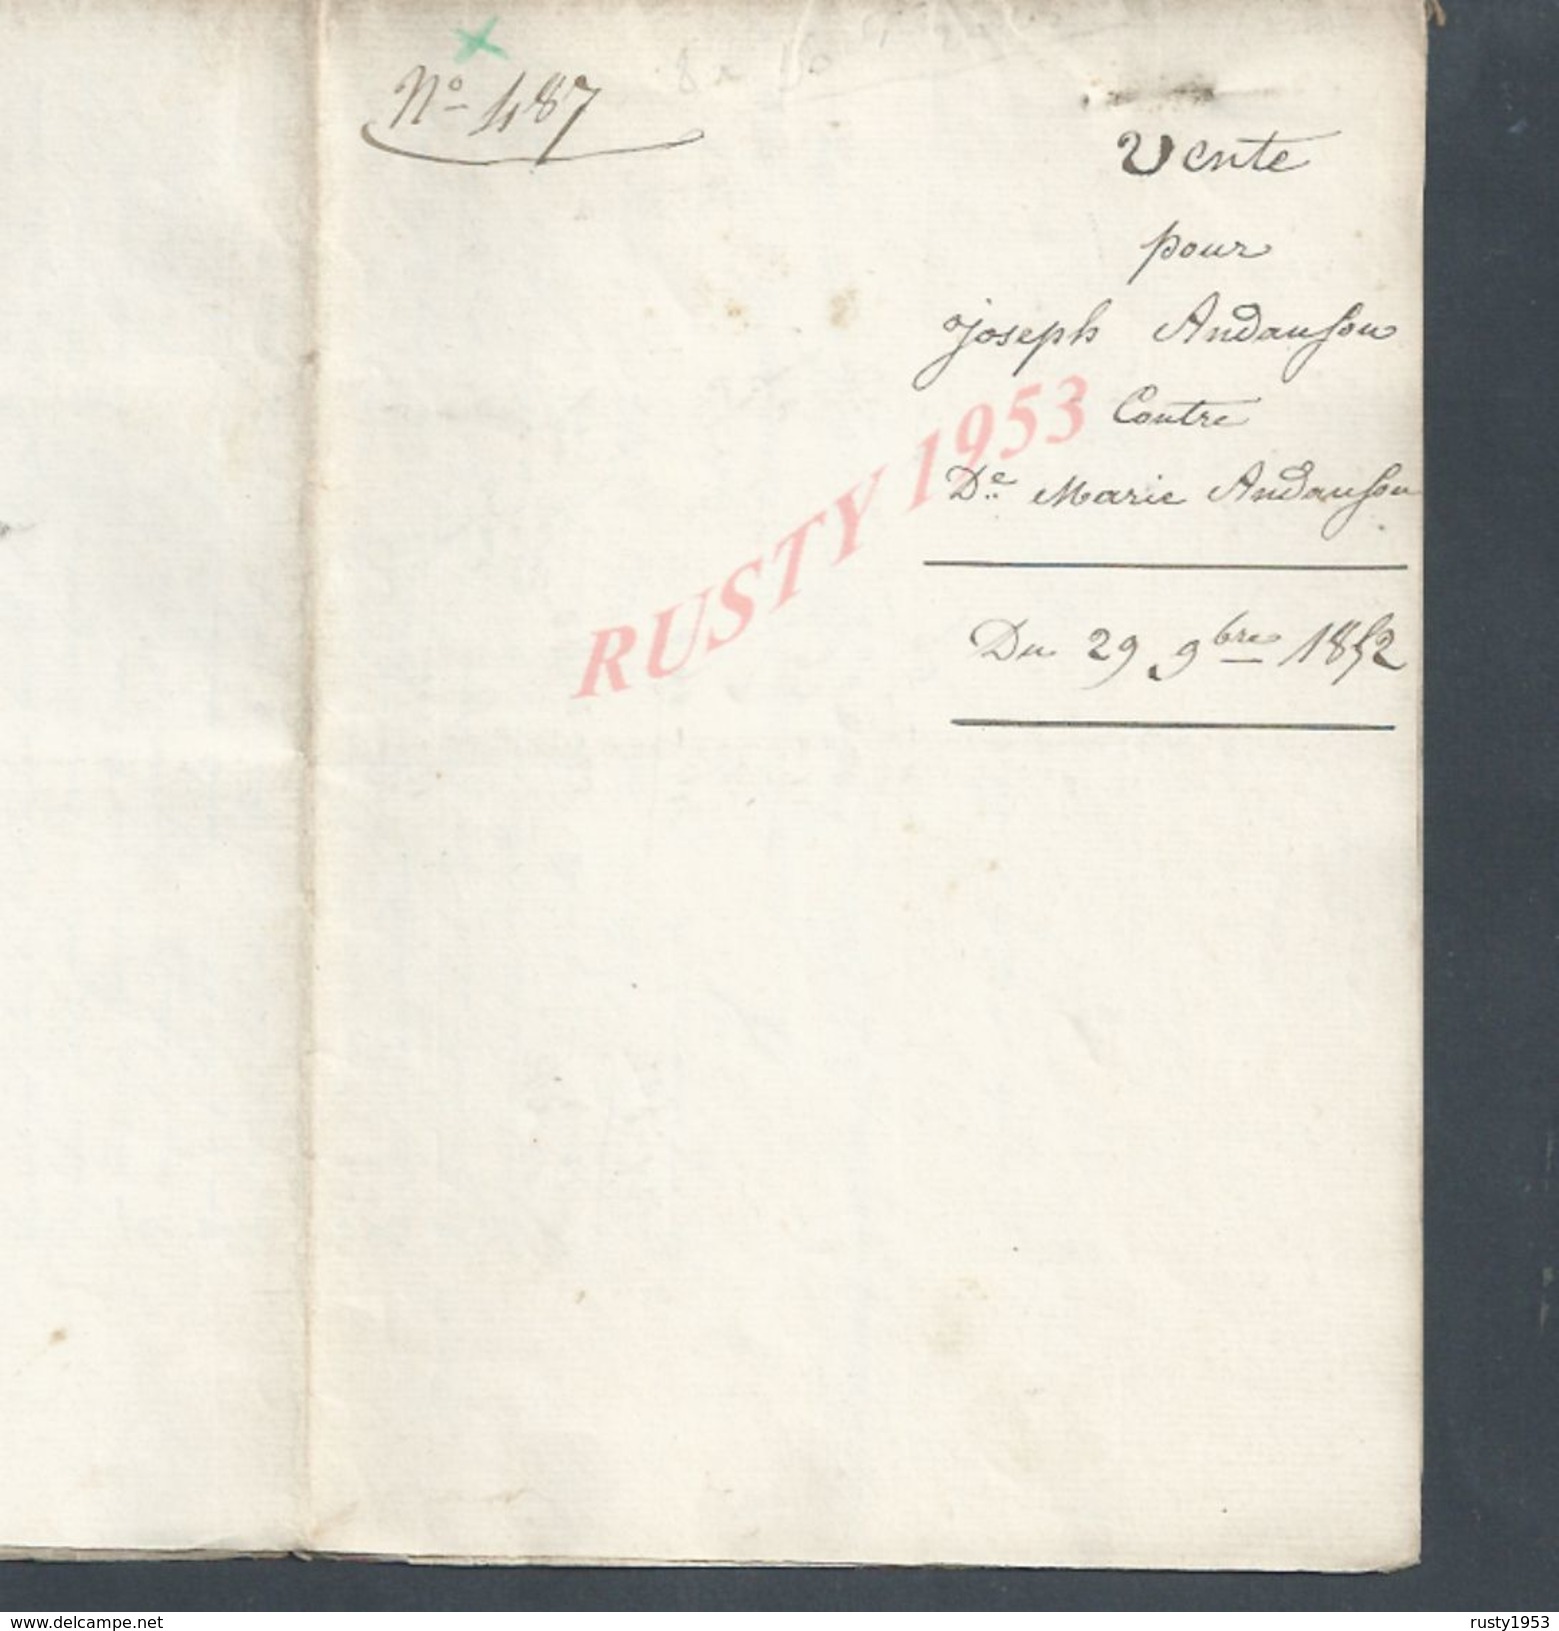 SAINT PIERRE ROCHE BILLON ROCHEFORT MONTAGNE 1852 ACTE VENTE IMMEUBLES POUR JOSEPH ANDOUFOU CONTRE MARIE ANDOUFOU 6Pg: - Manuscripts